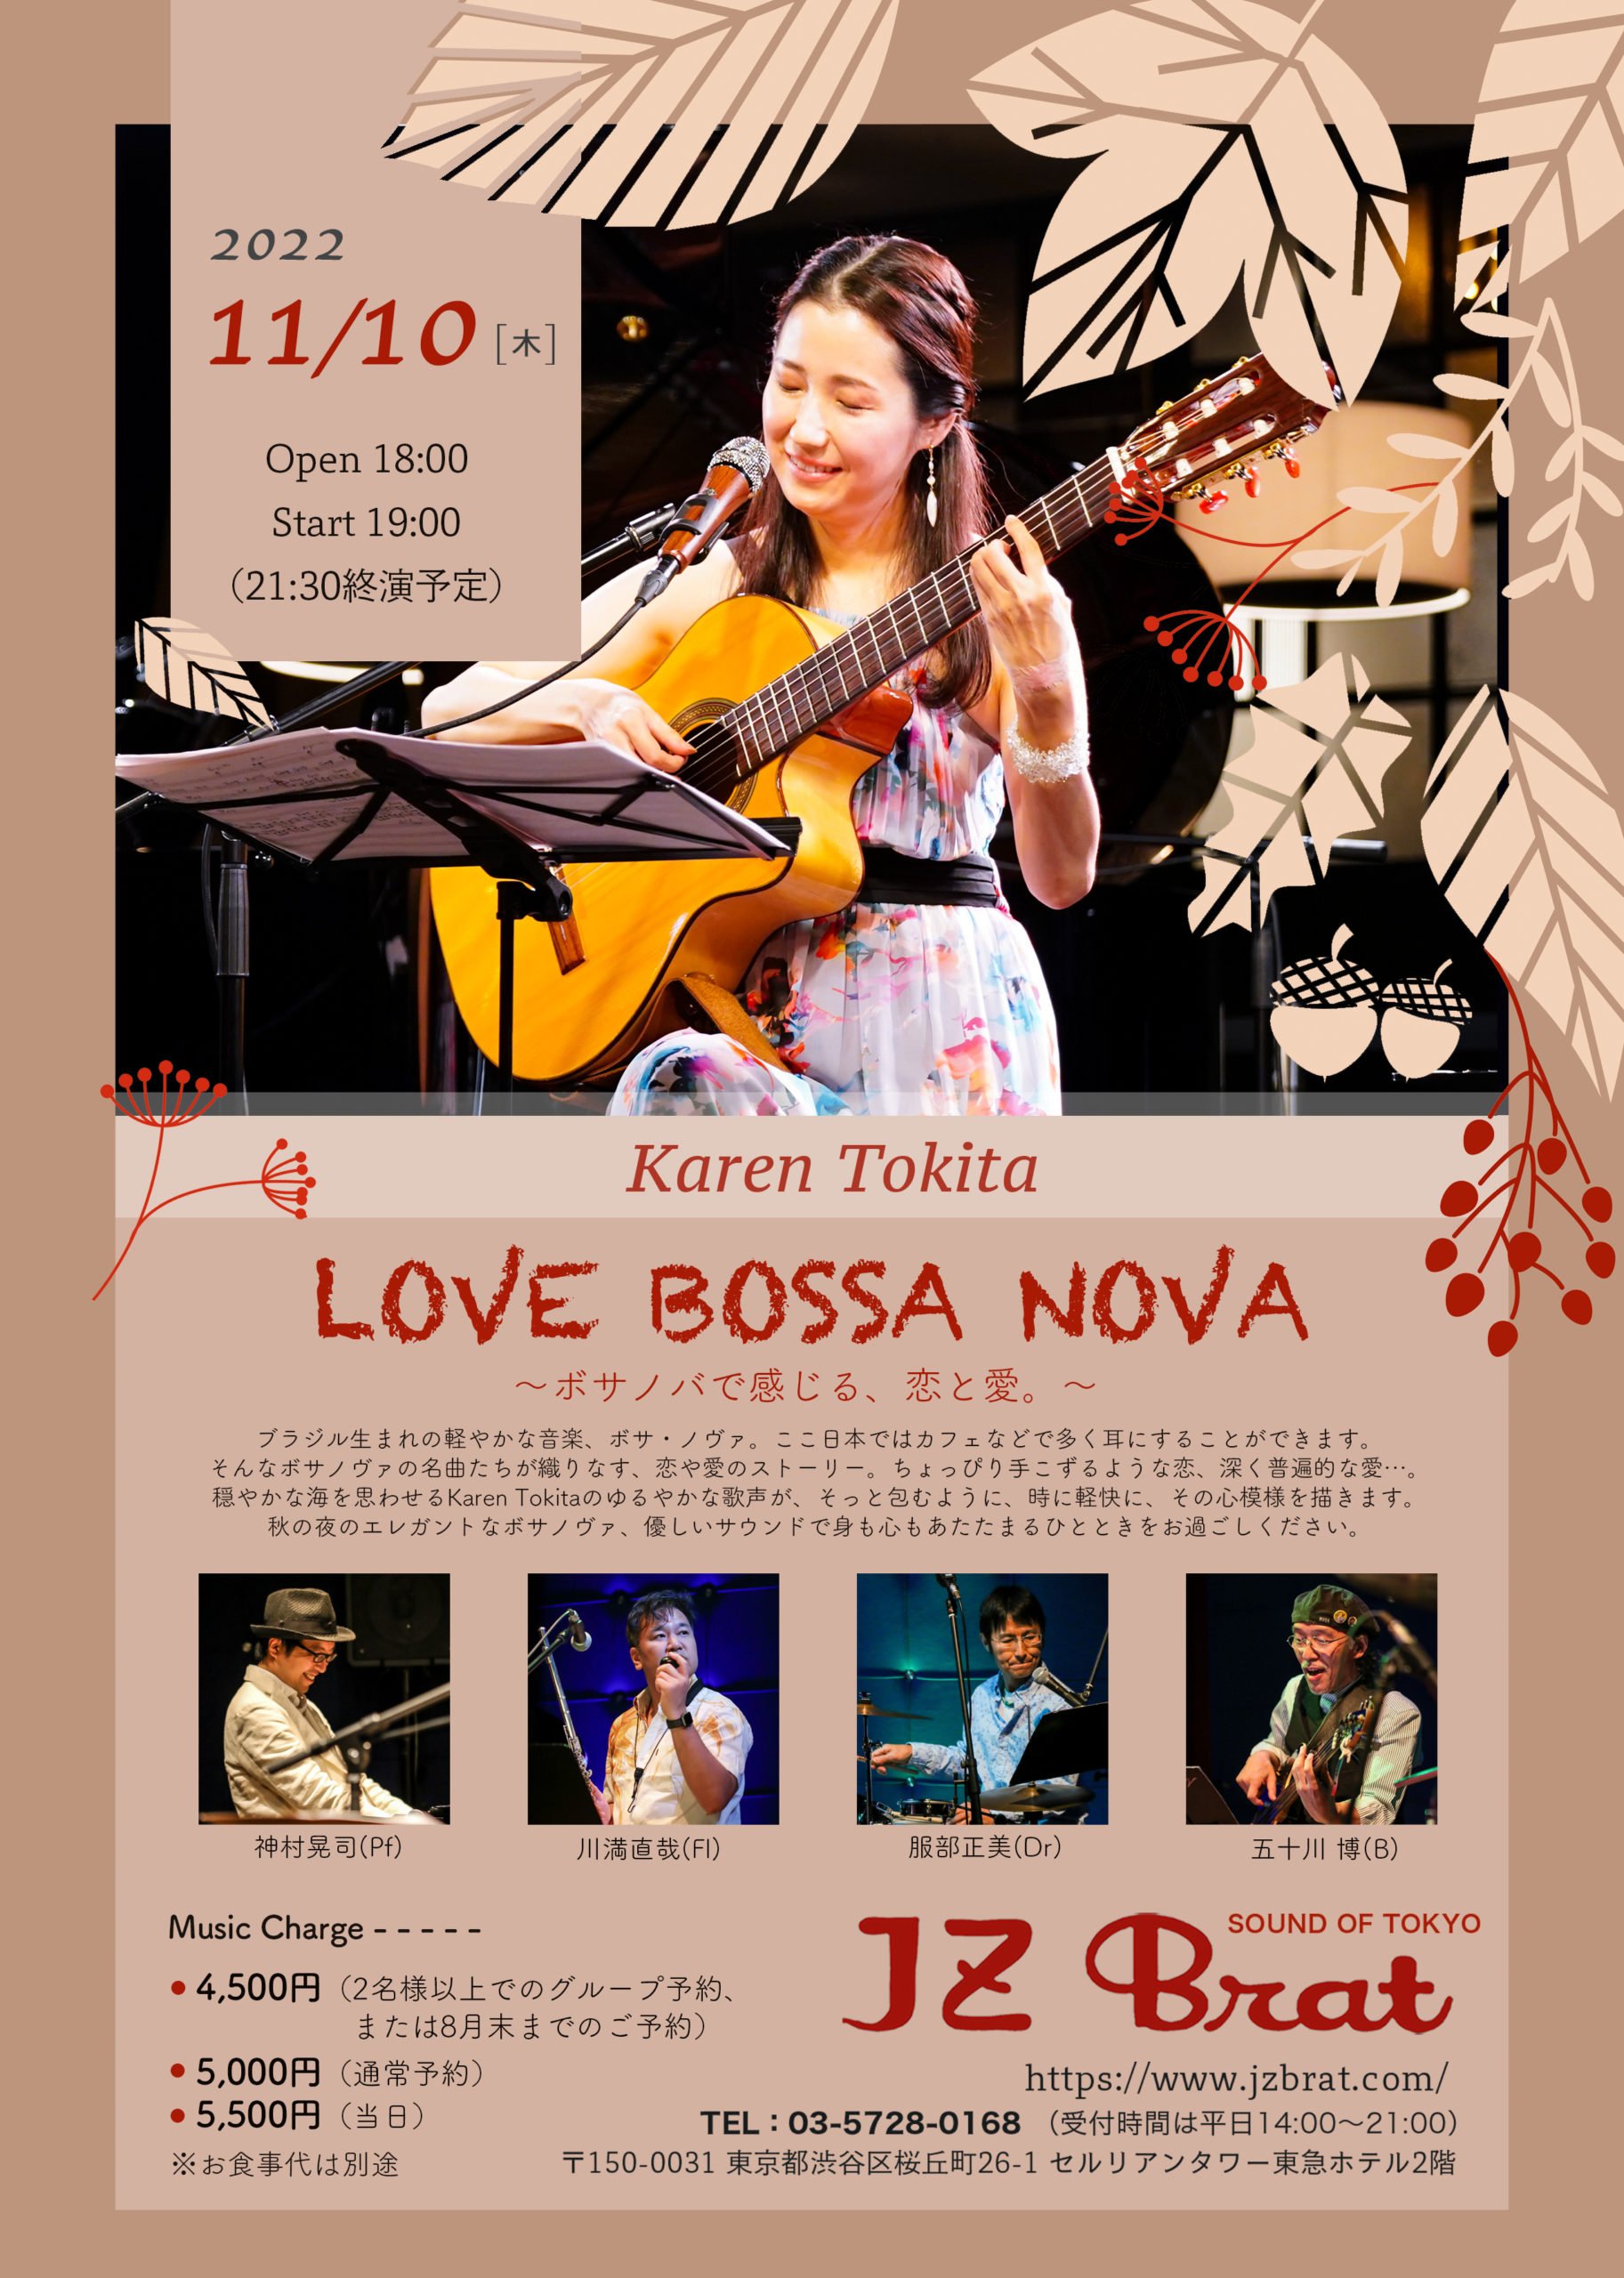 渋谷Jz Brat “Love Bossa Nova 〜ボサノバで感じる、恋と愛。〜